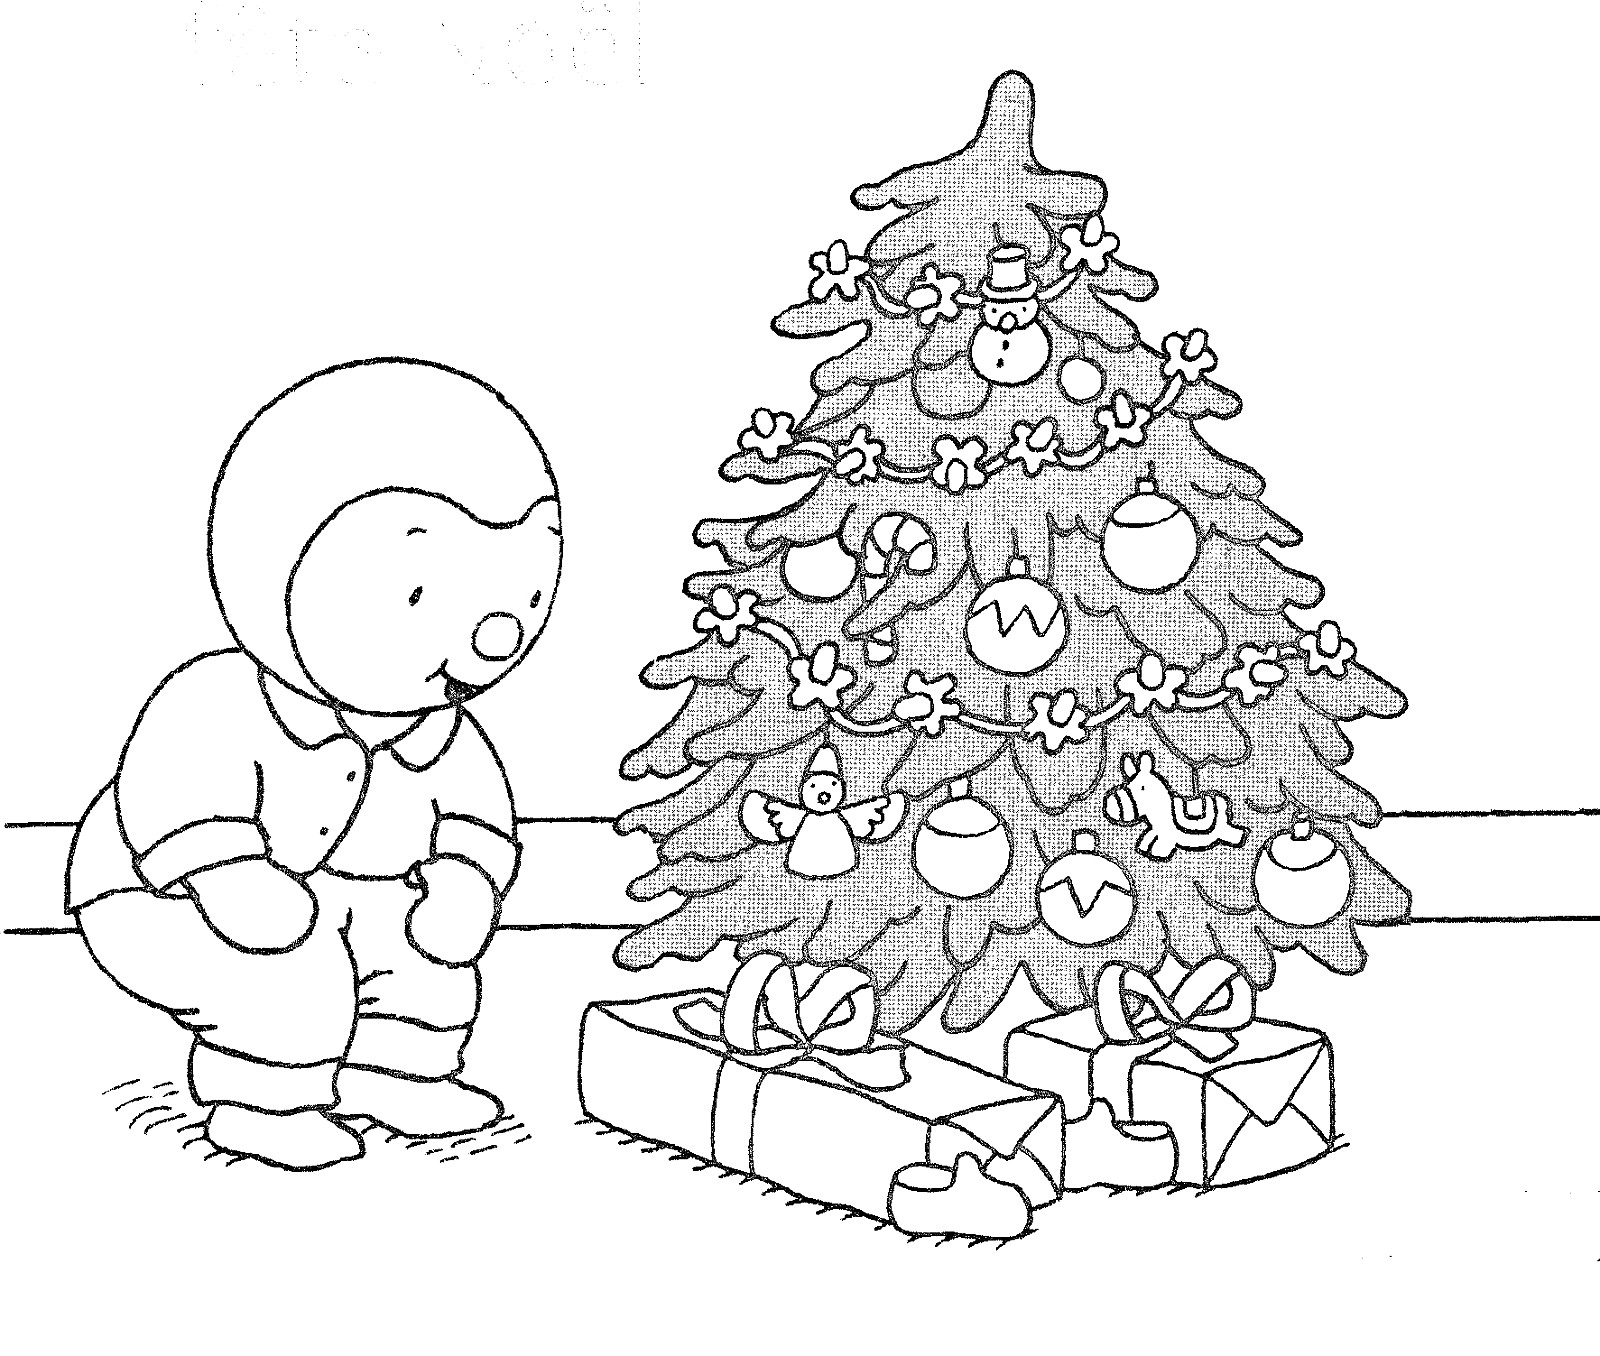 T'choupi celebra o Natal ao pé da sua árvore: ele tem muitos presentes!